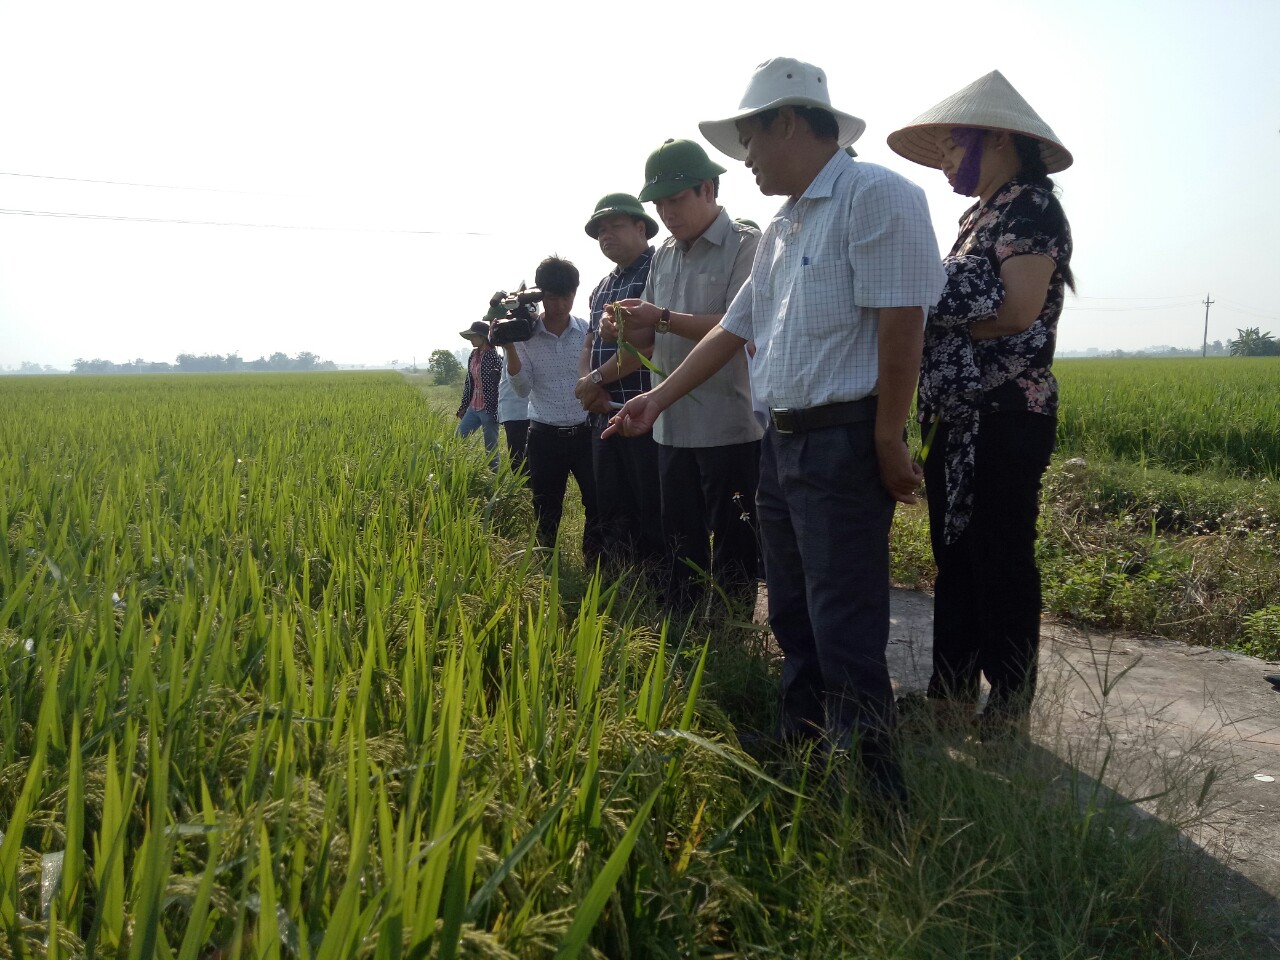 Cục Thống kê Thái Bình tổ chức đi thăm đồng để đánh giá sơ bộ năng suất lúa vụ Mùa năm 2018 - tại các huyện, thành phố